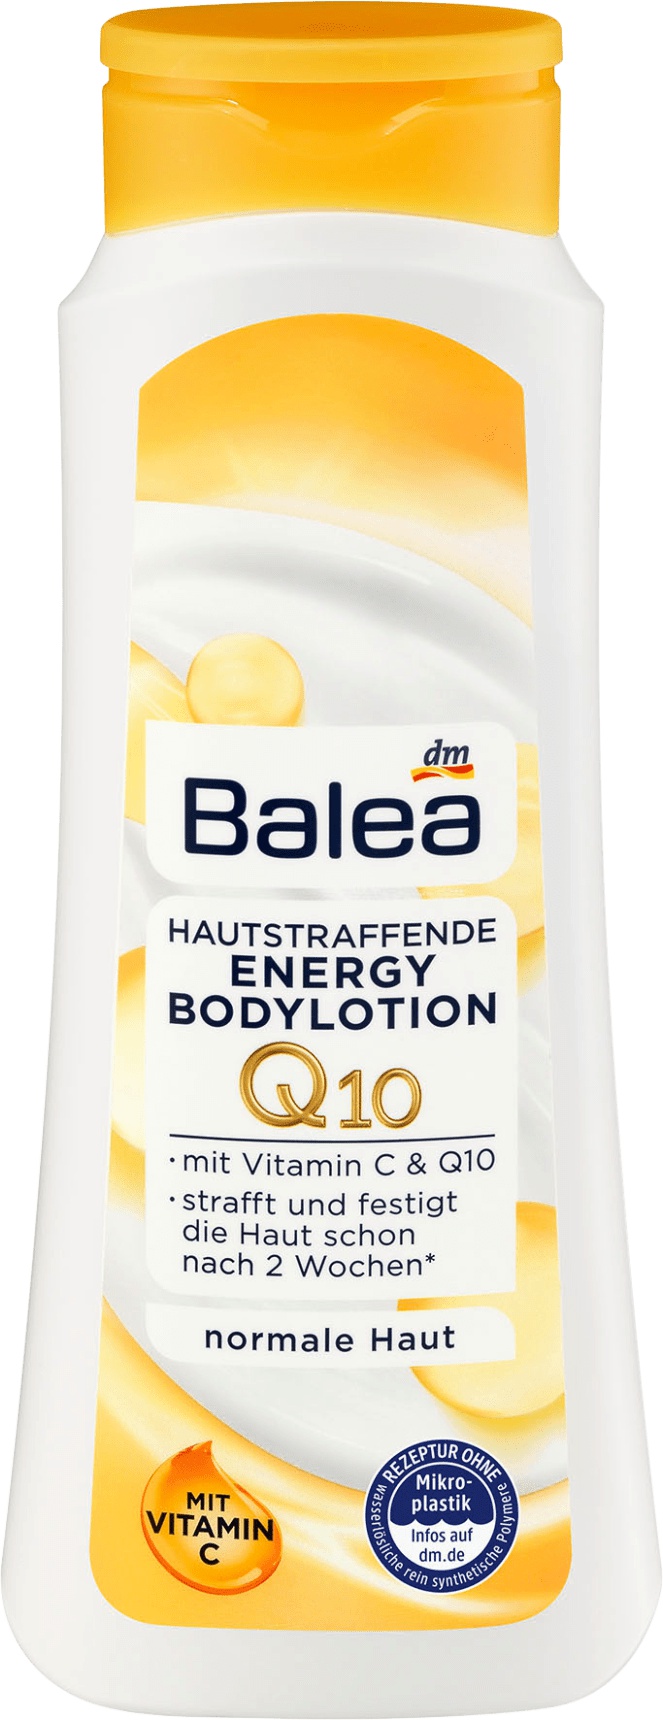 Balea Bodylotion Hautstraffende Energy Q10 Mit Vitamin C